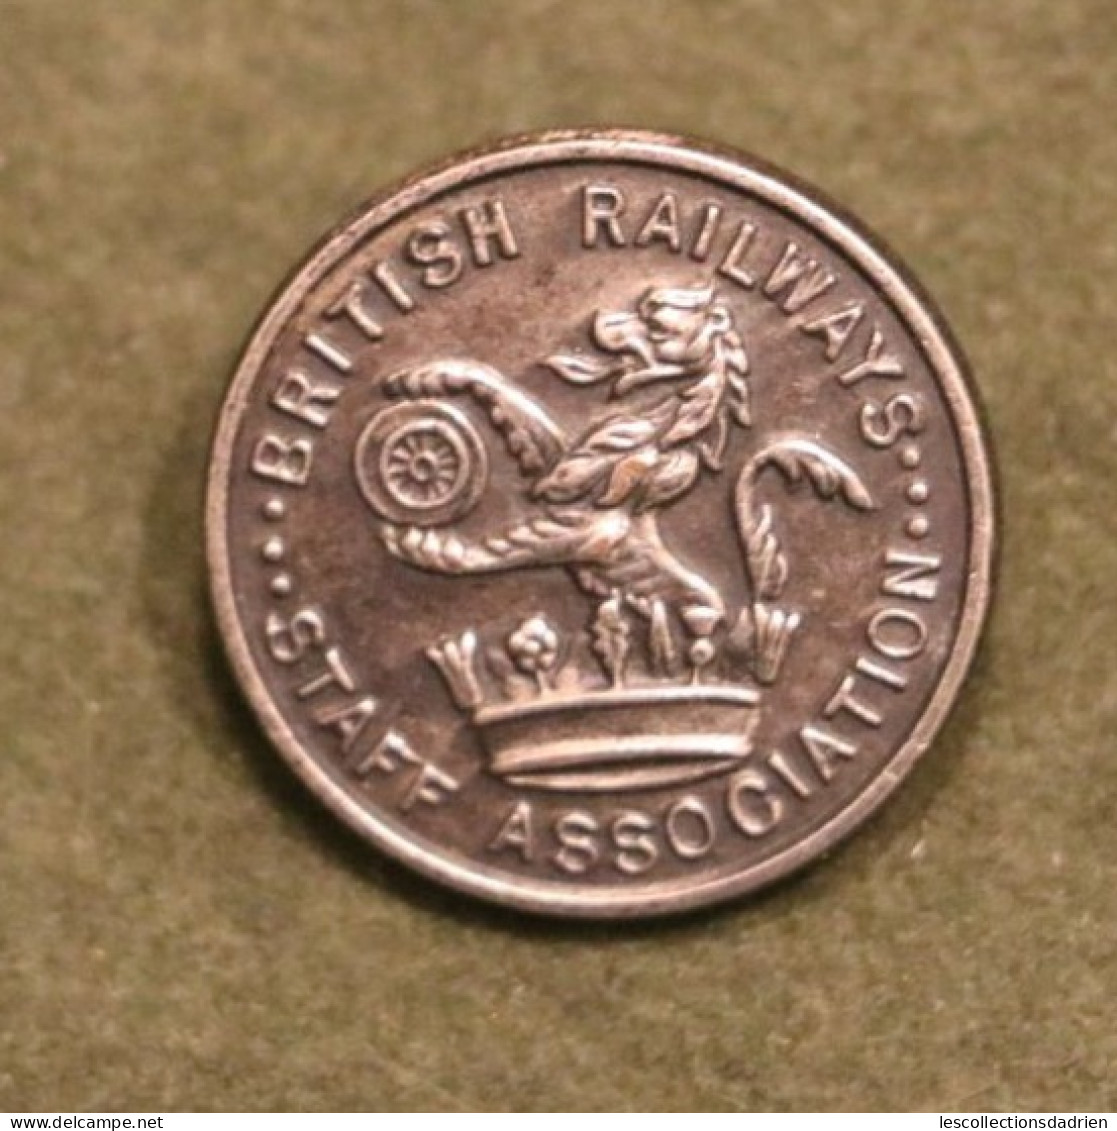 Insigne Broche British Railways Staff Association - Badge Pin Brooch - Train - Eisenbahnverkehr